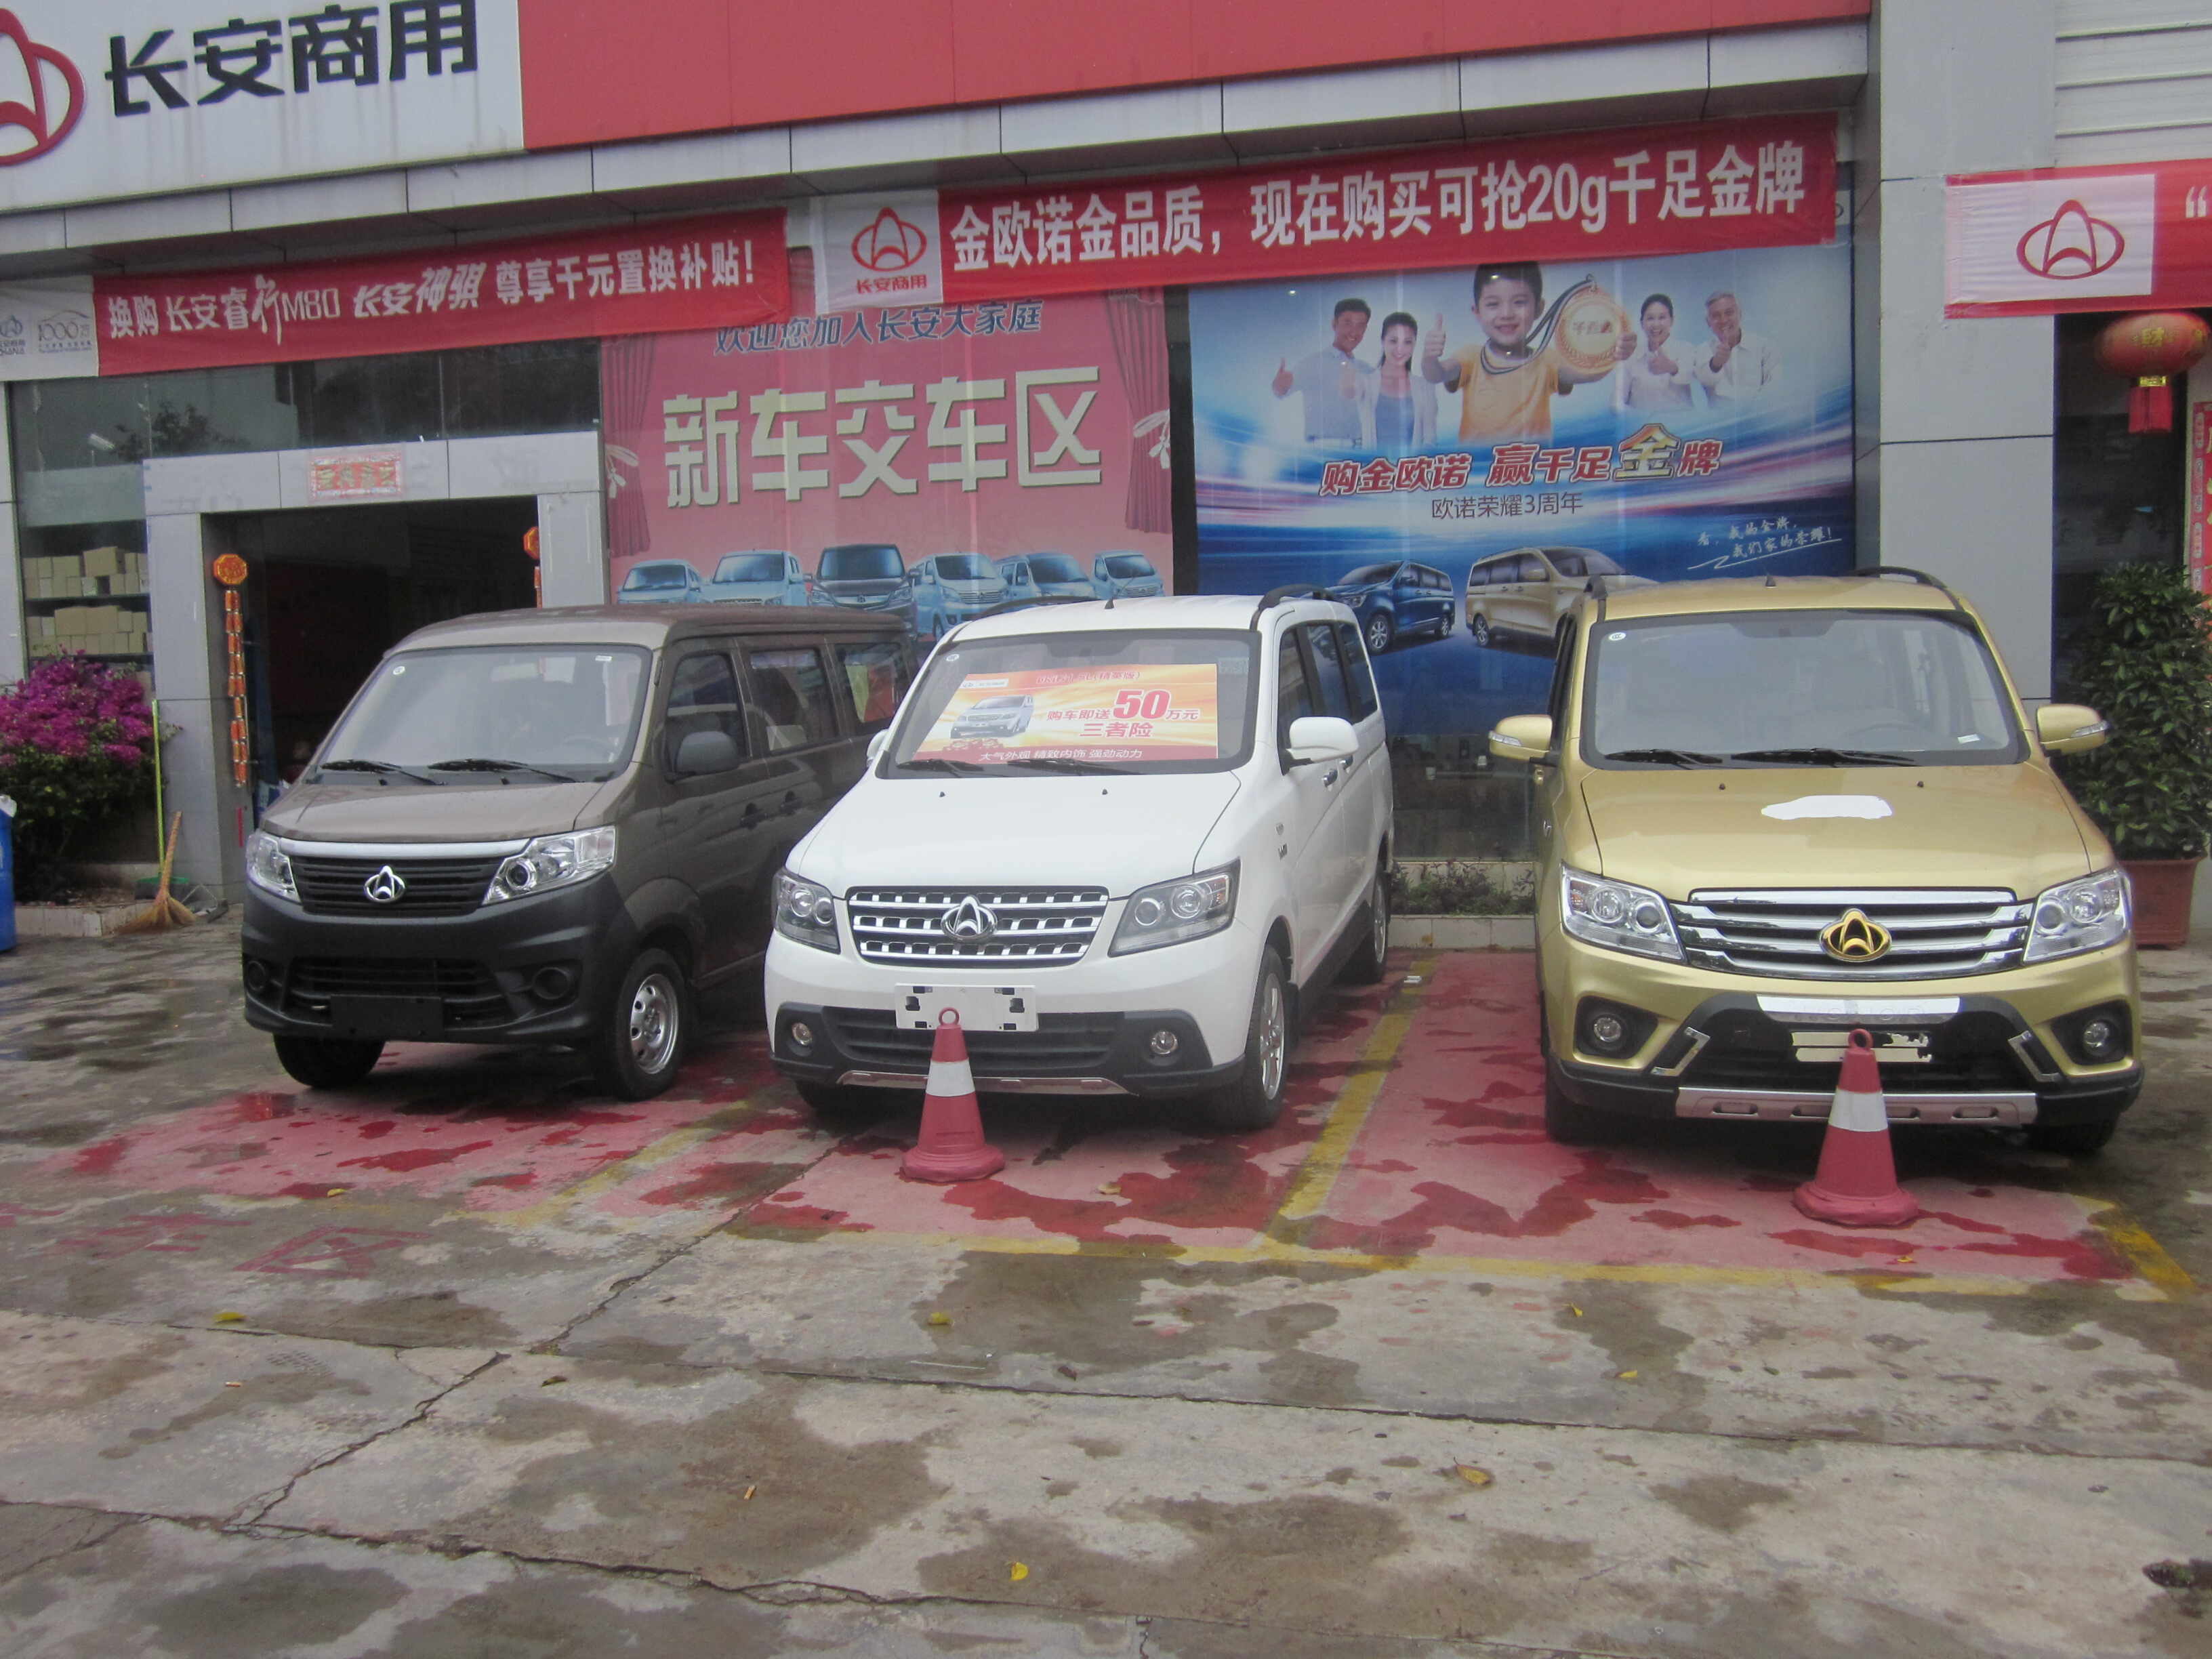 4s店,店名全称" 云南万友汽车销售服务有限公司普洱分公司",主营 长安